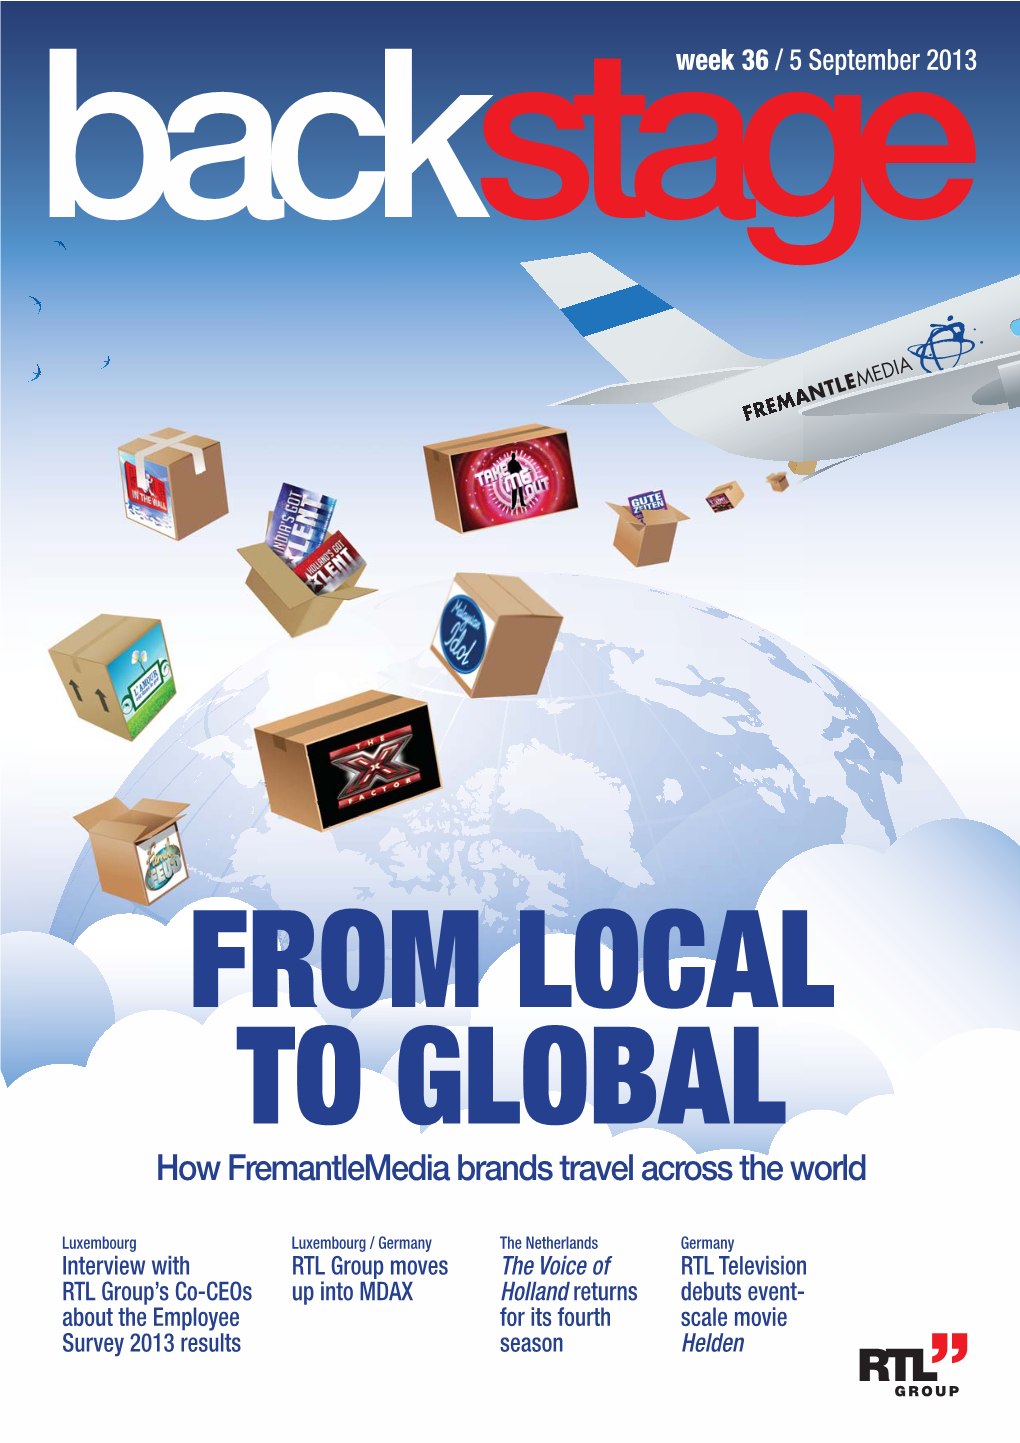 How Fremantlemedia Brands Travel Across the World